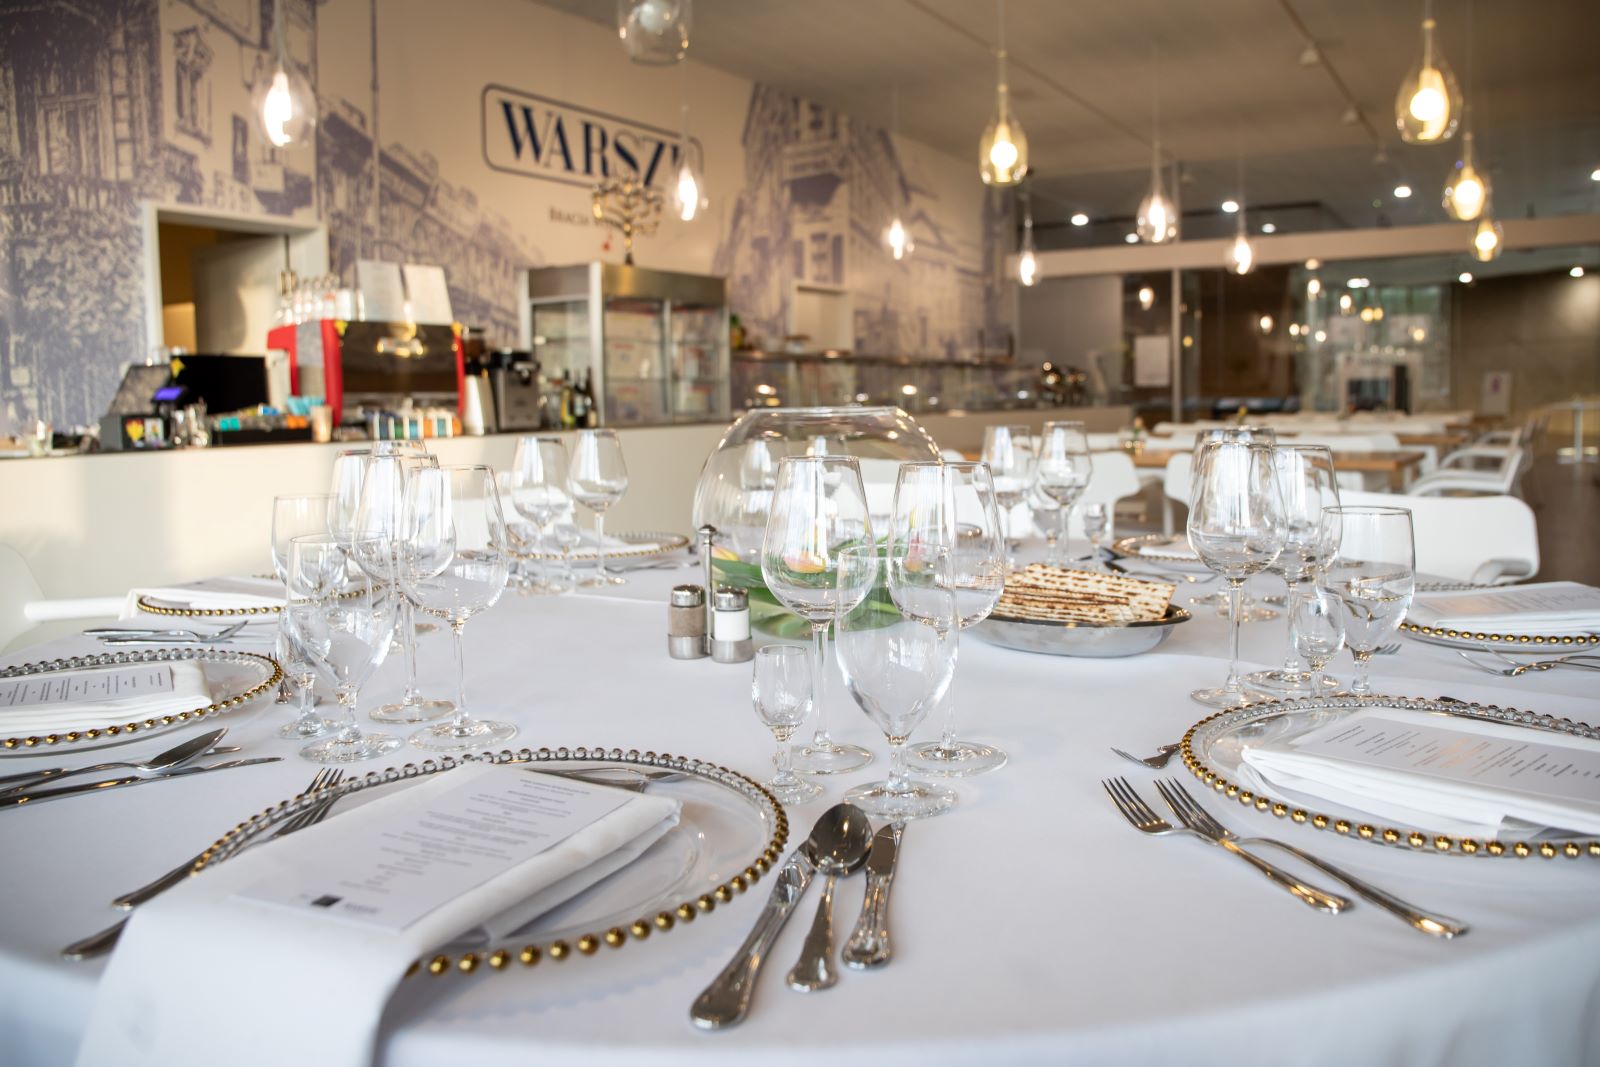 Biały stół ze sztućcami, kieliszkami i talerzami. W tle logo restauracji "Warsze".